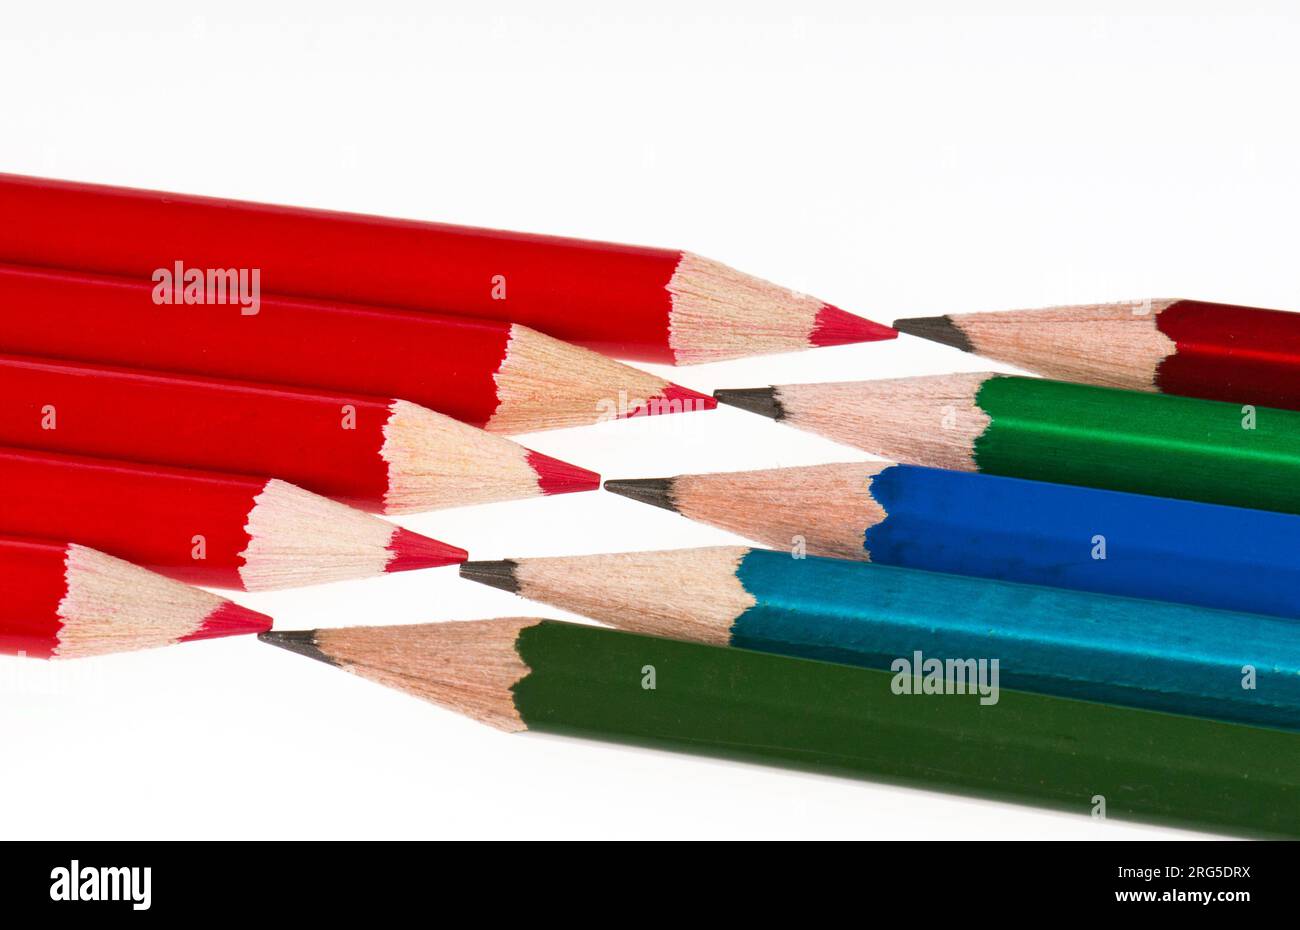 Le matite rosse e nere sono gli strumenti più basilari degli